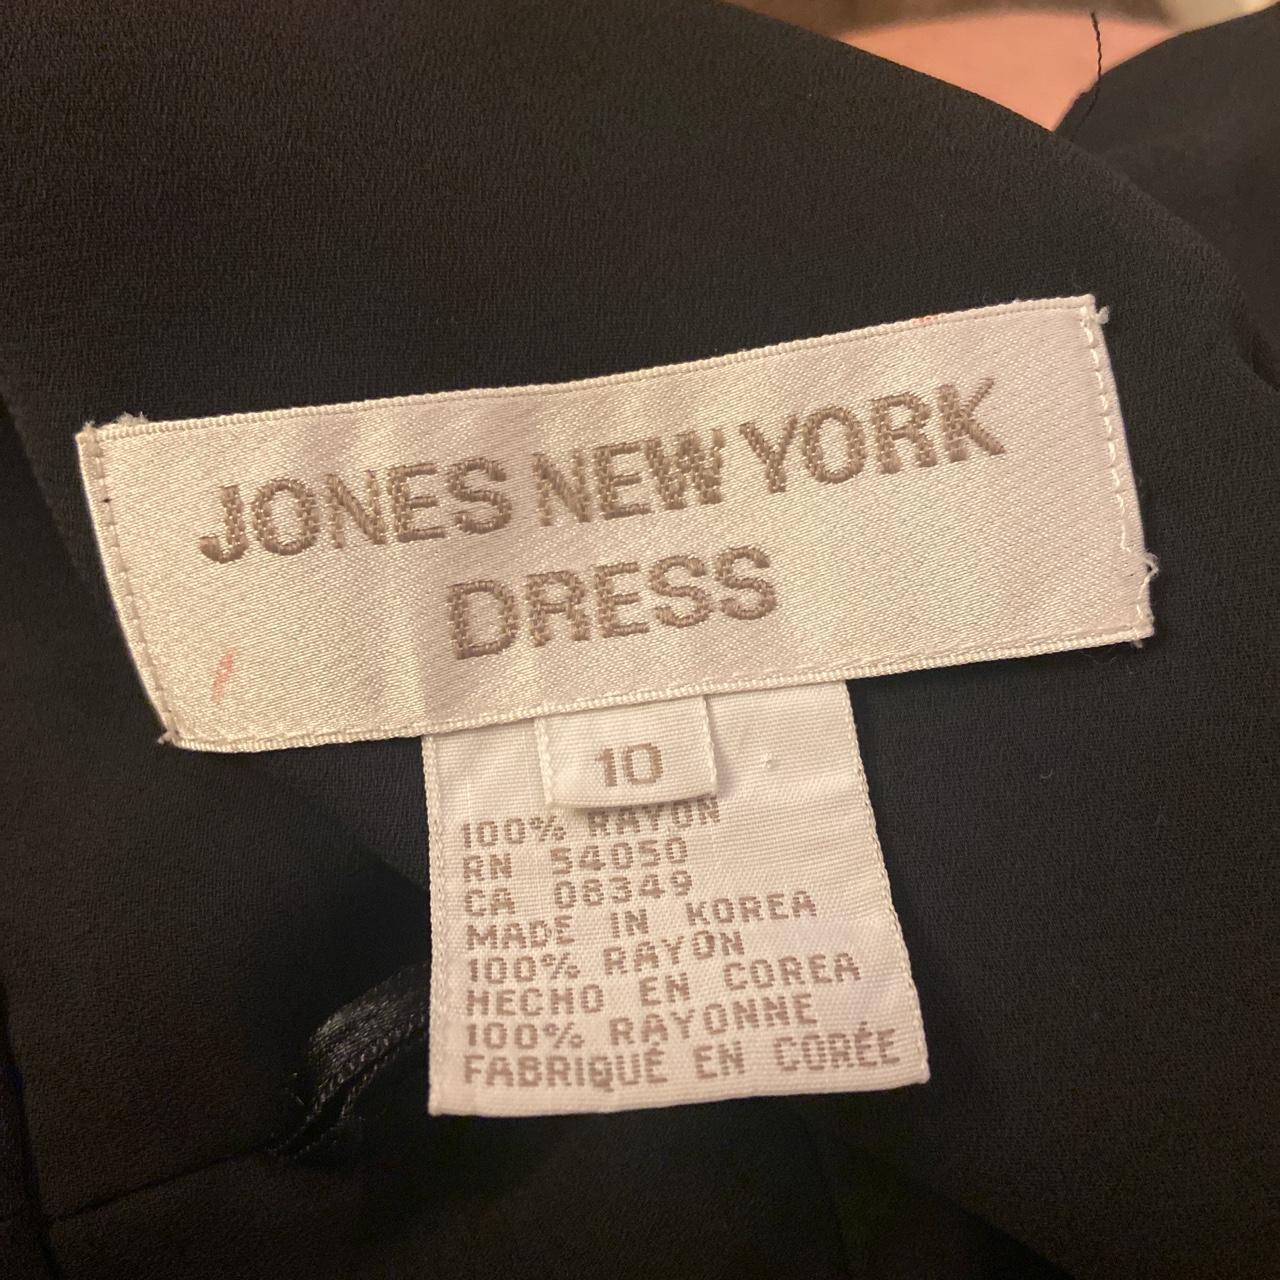 Vintage Jones New York dress black and white floral - Depop